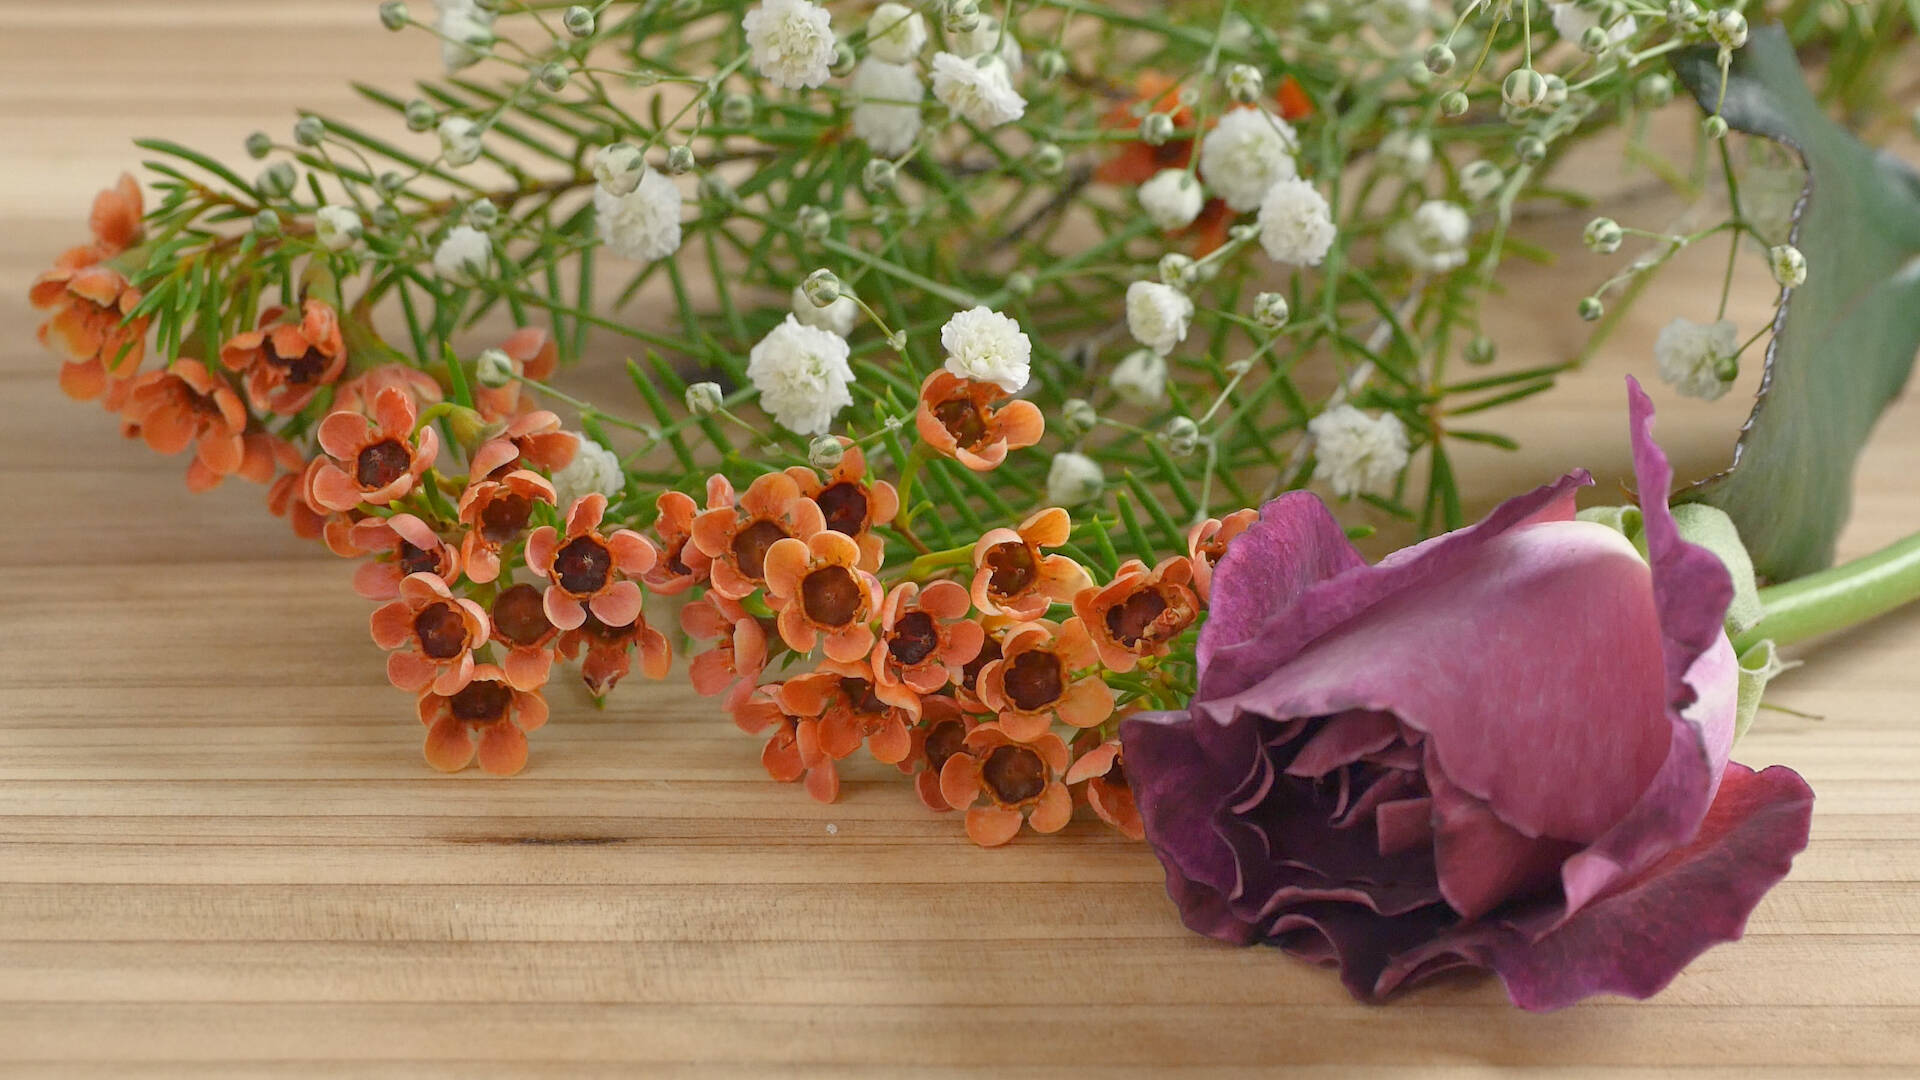 好きな花を長く楽しむ 電子レンジで簡単 押し花 の作り方 18年1月21日 エキサイトニュース